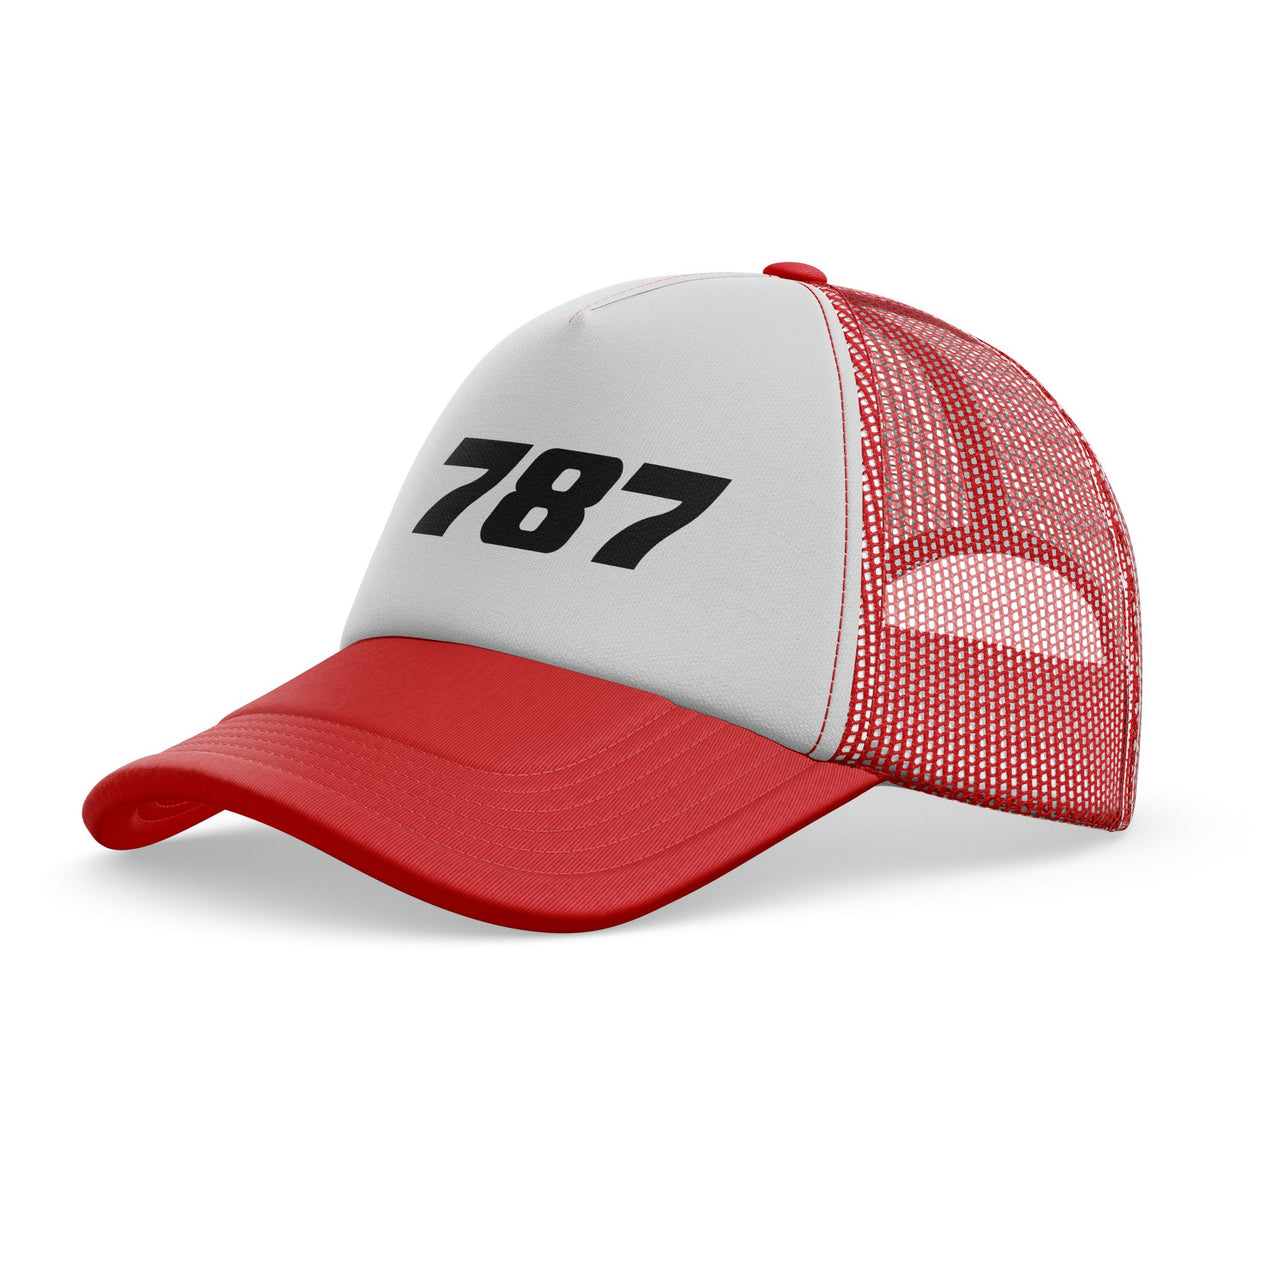 787 Flat Text Designed Trucker Caps & Hats